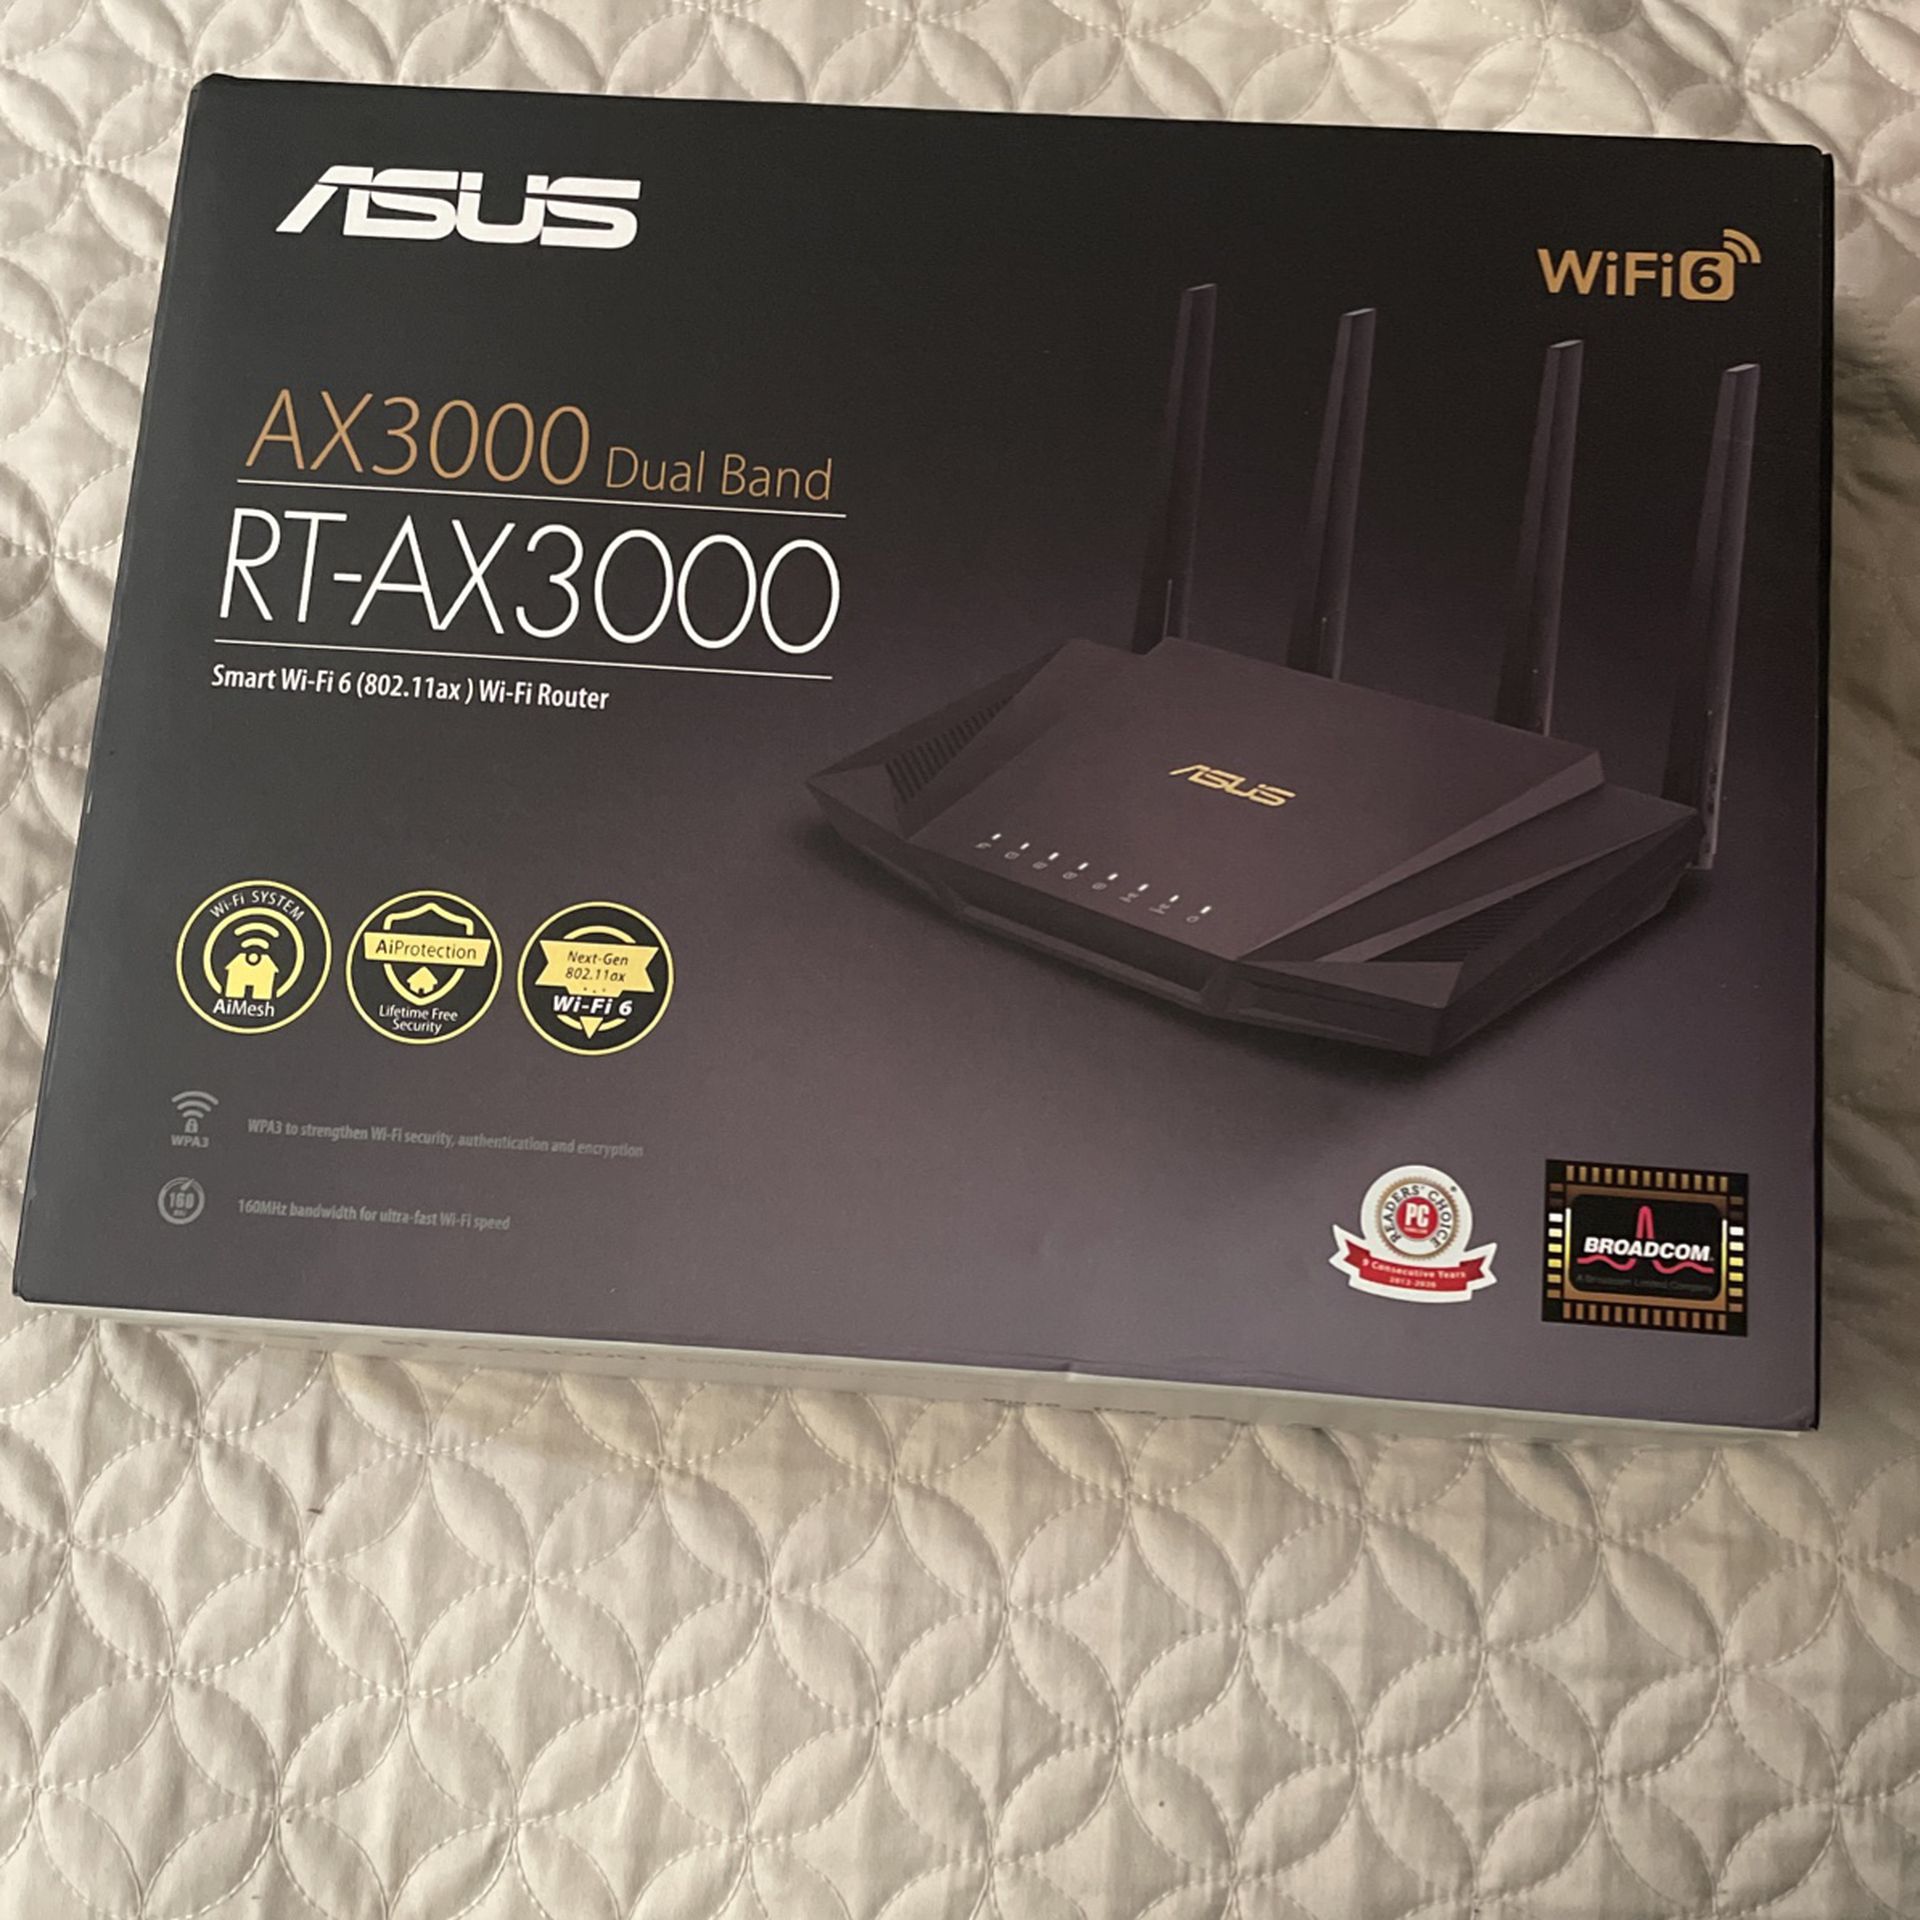 Asus Ax3000 Dual Band RT-AX3000